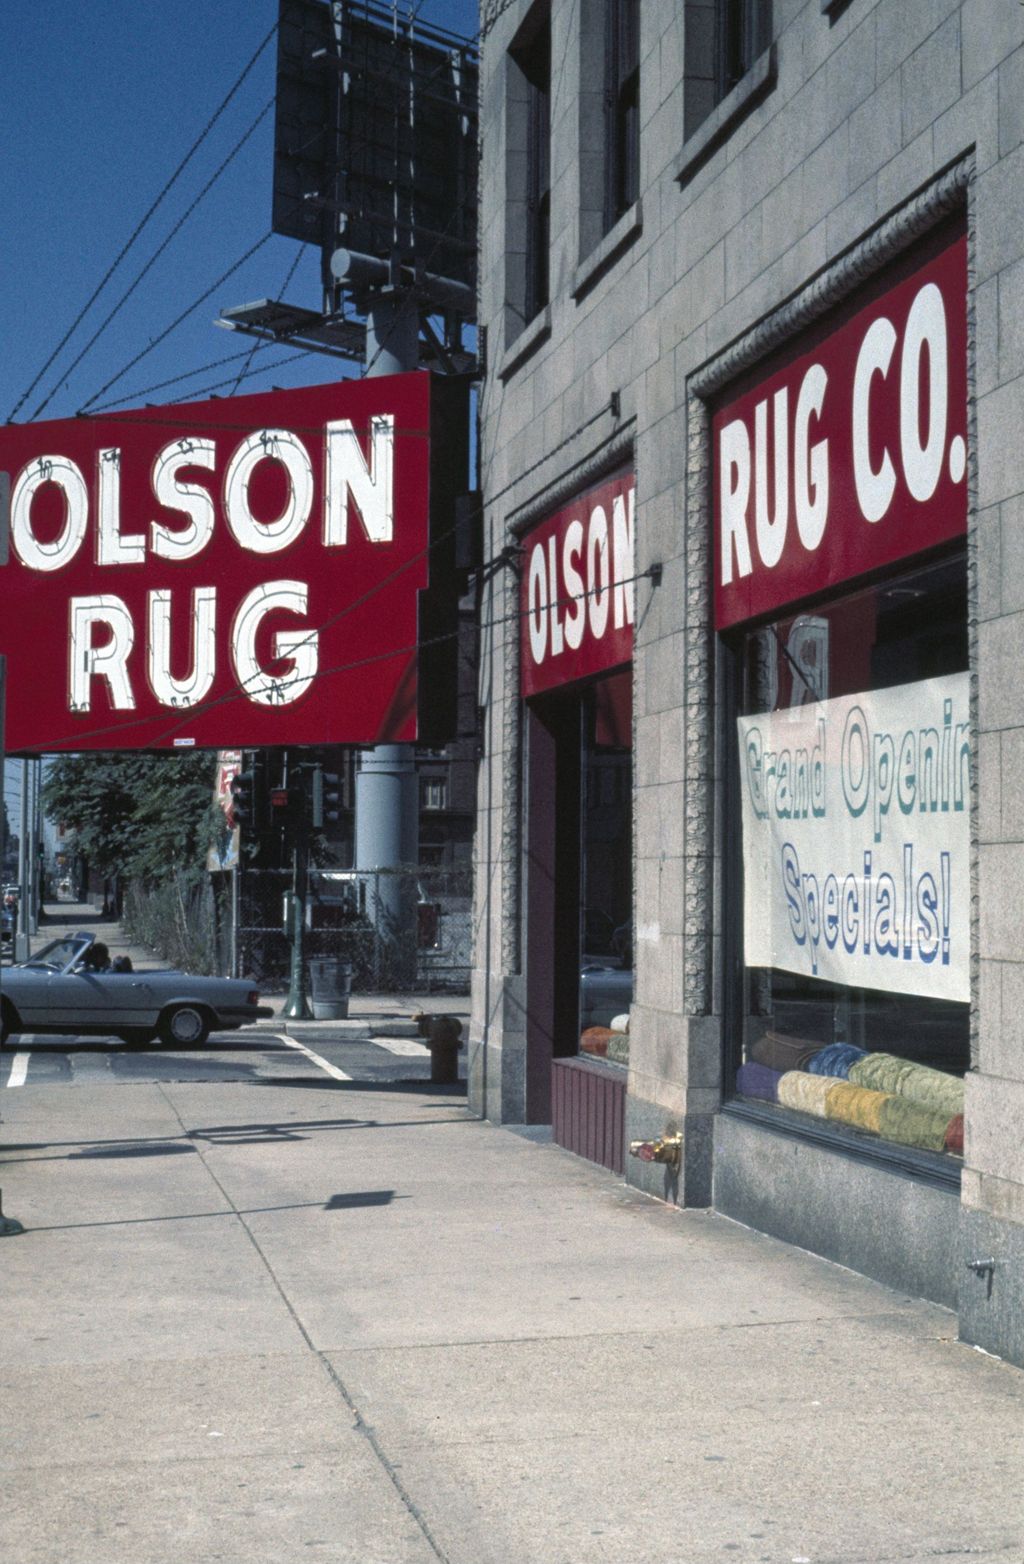 Miniature of Olson Rug store, East Ohio Street